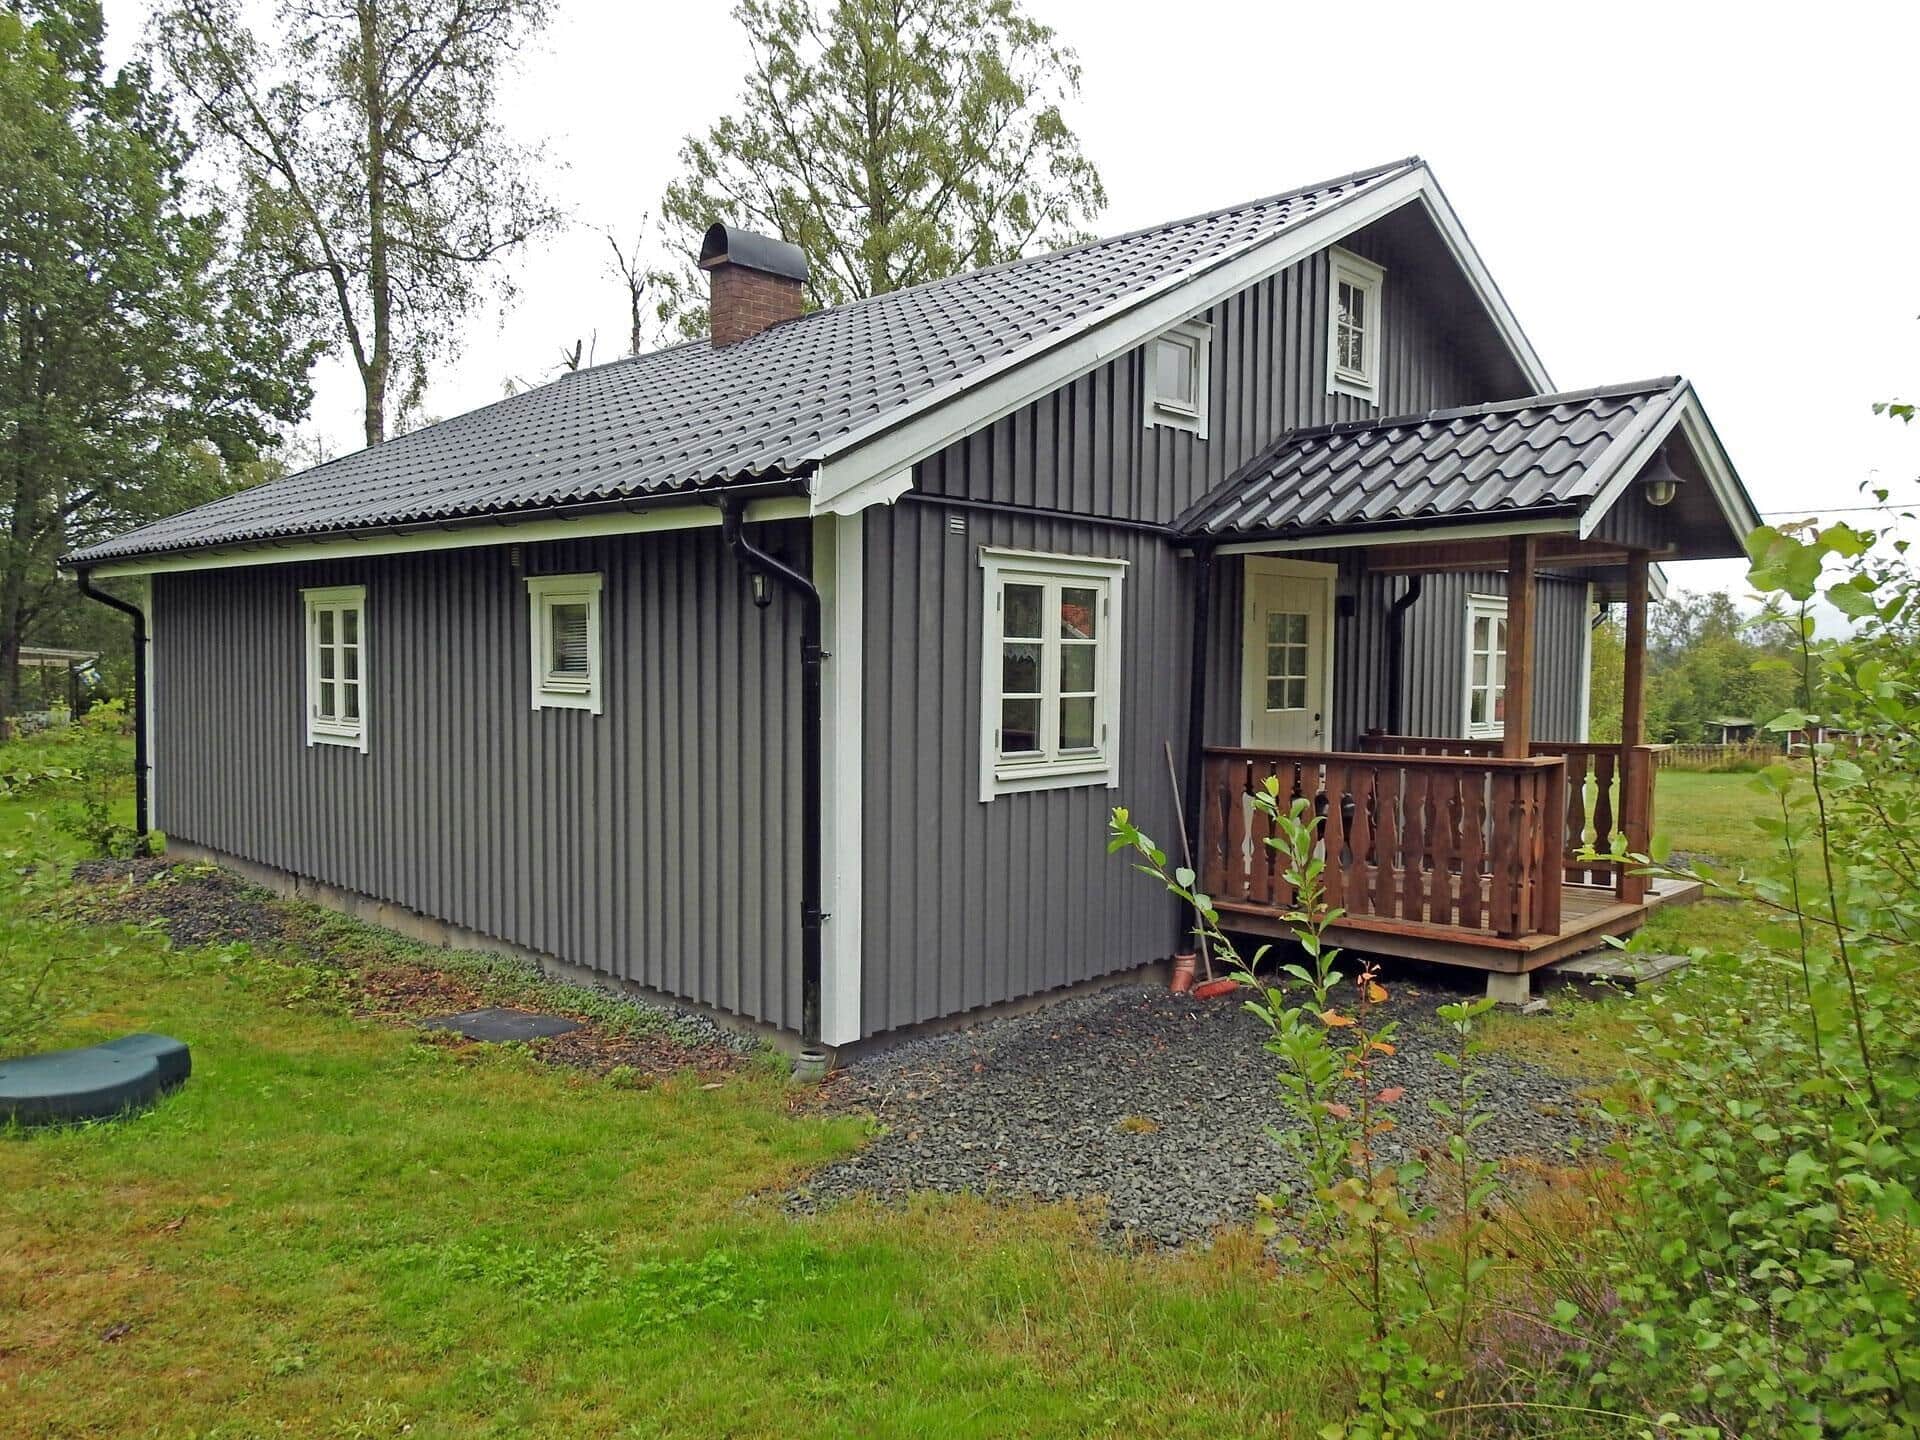 Image 1-171 Holiday-home JON526, Idvägen 43, DK - 571 95 Nässjö